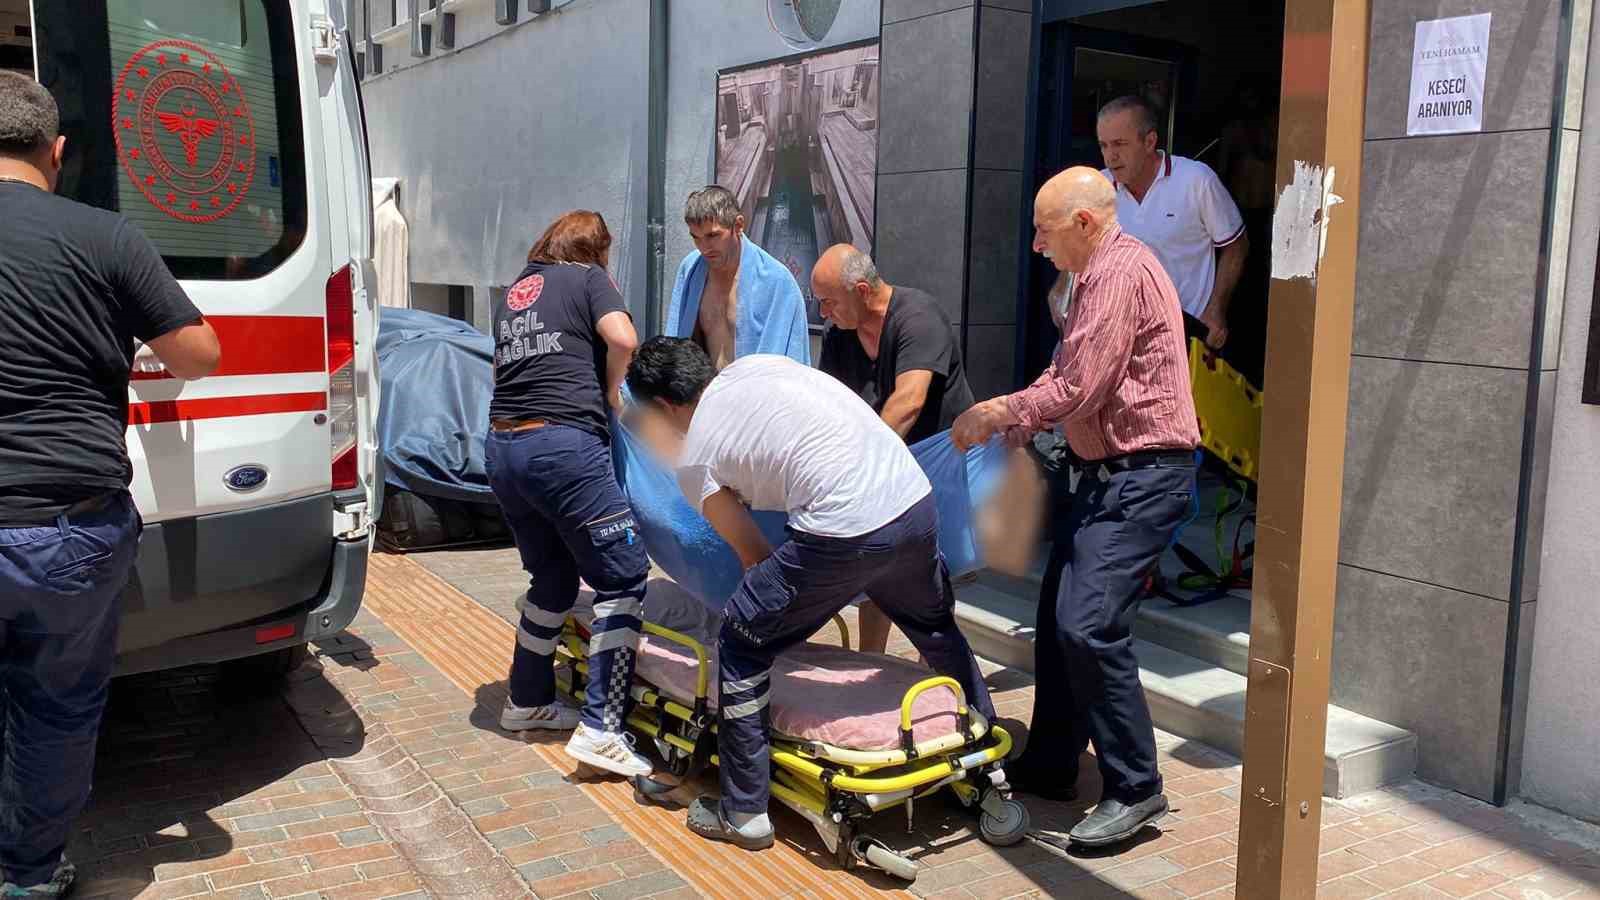 Hamamda düşerek başını çarpan 70 yaşındaki adam tüm müdahalelere rağmen kurtarılamadı